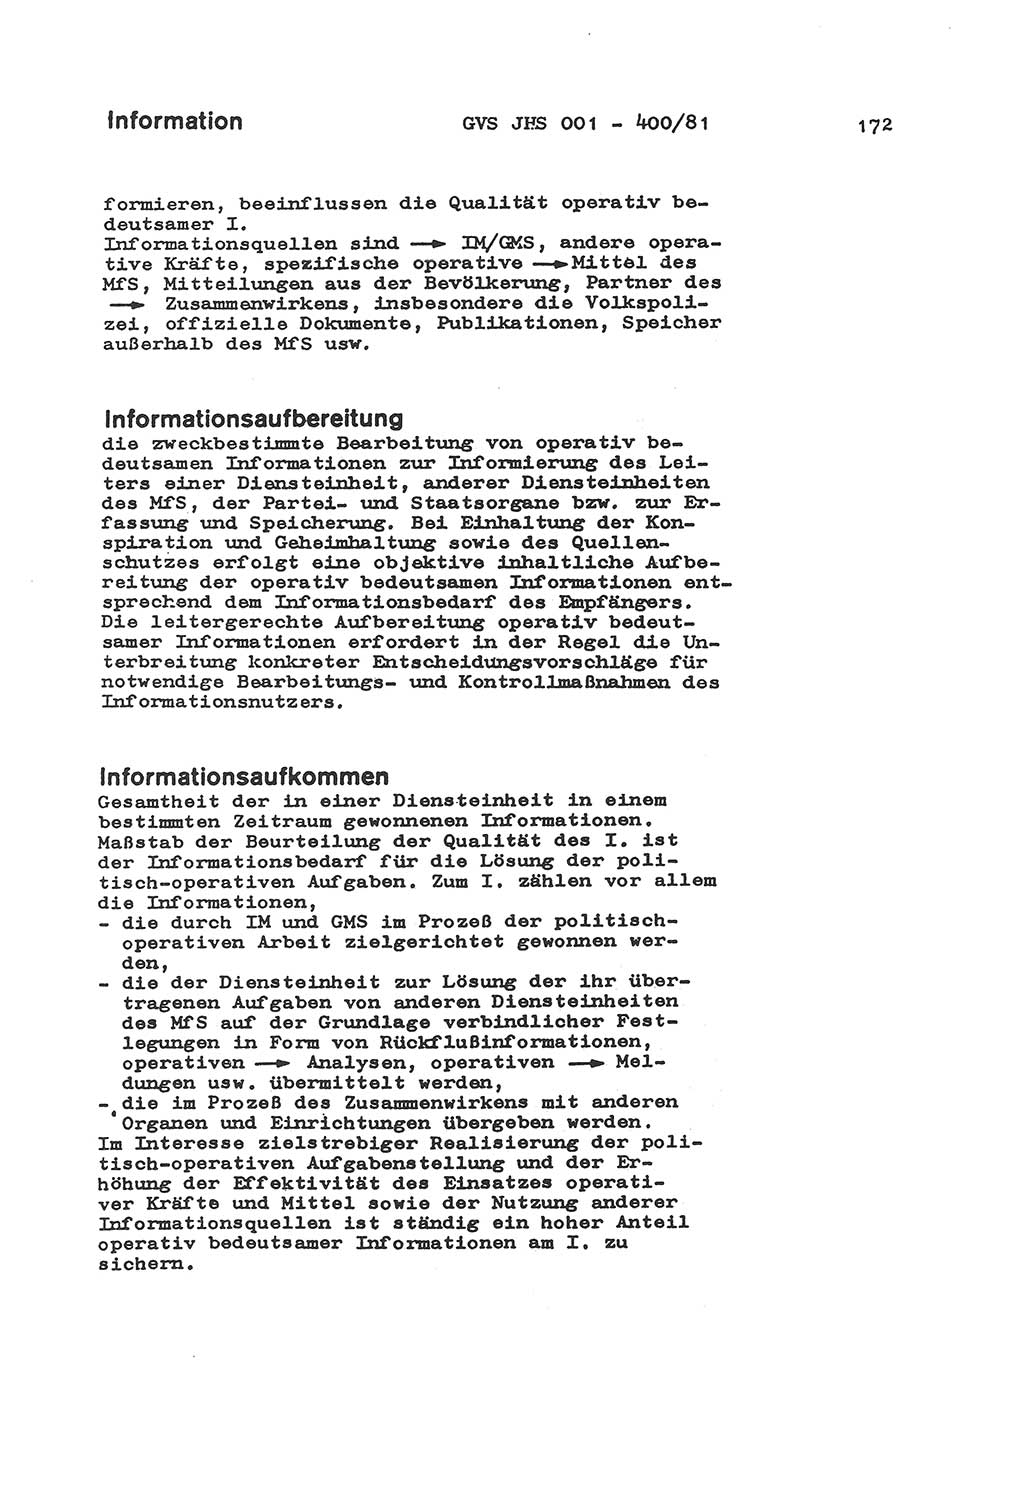 Wörterbuch der politisch-operativen Arbeit, Ministerium für Staatssicherheit (MfS) [Deutsche Demokratische Republik (DDR)], Juristische Hochschule (JHS), Geheime Verschlußsache (GVS) o001-400/81, Potsdam 1985, Blatt 172 (Wb. pol.-op. Arb. MfS DDR JHS GVS o001-400/81 1985, Bl. 172)